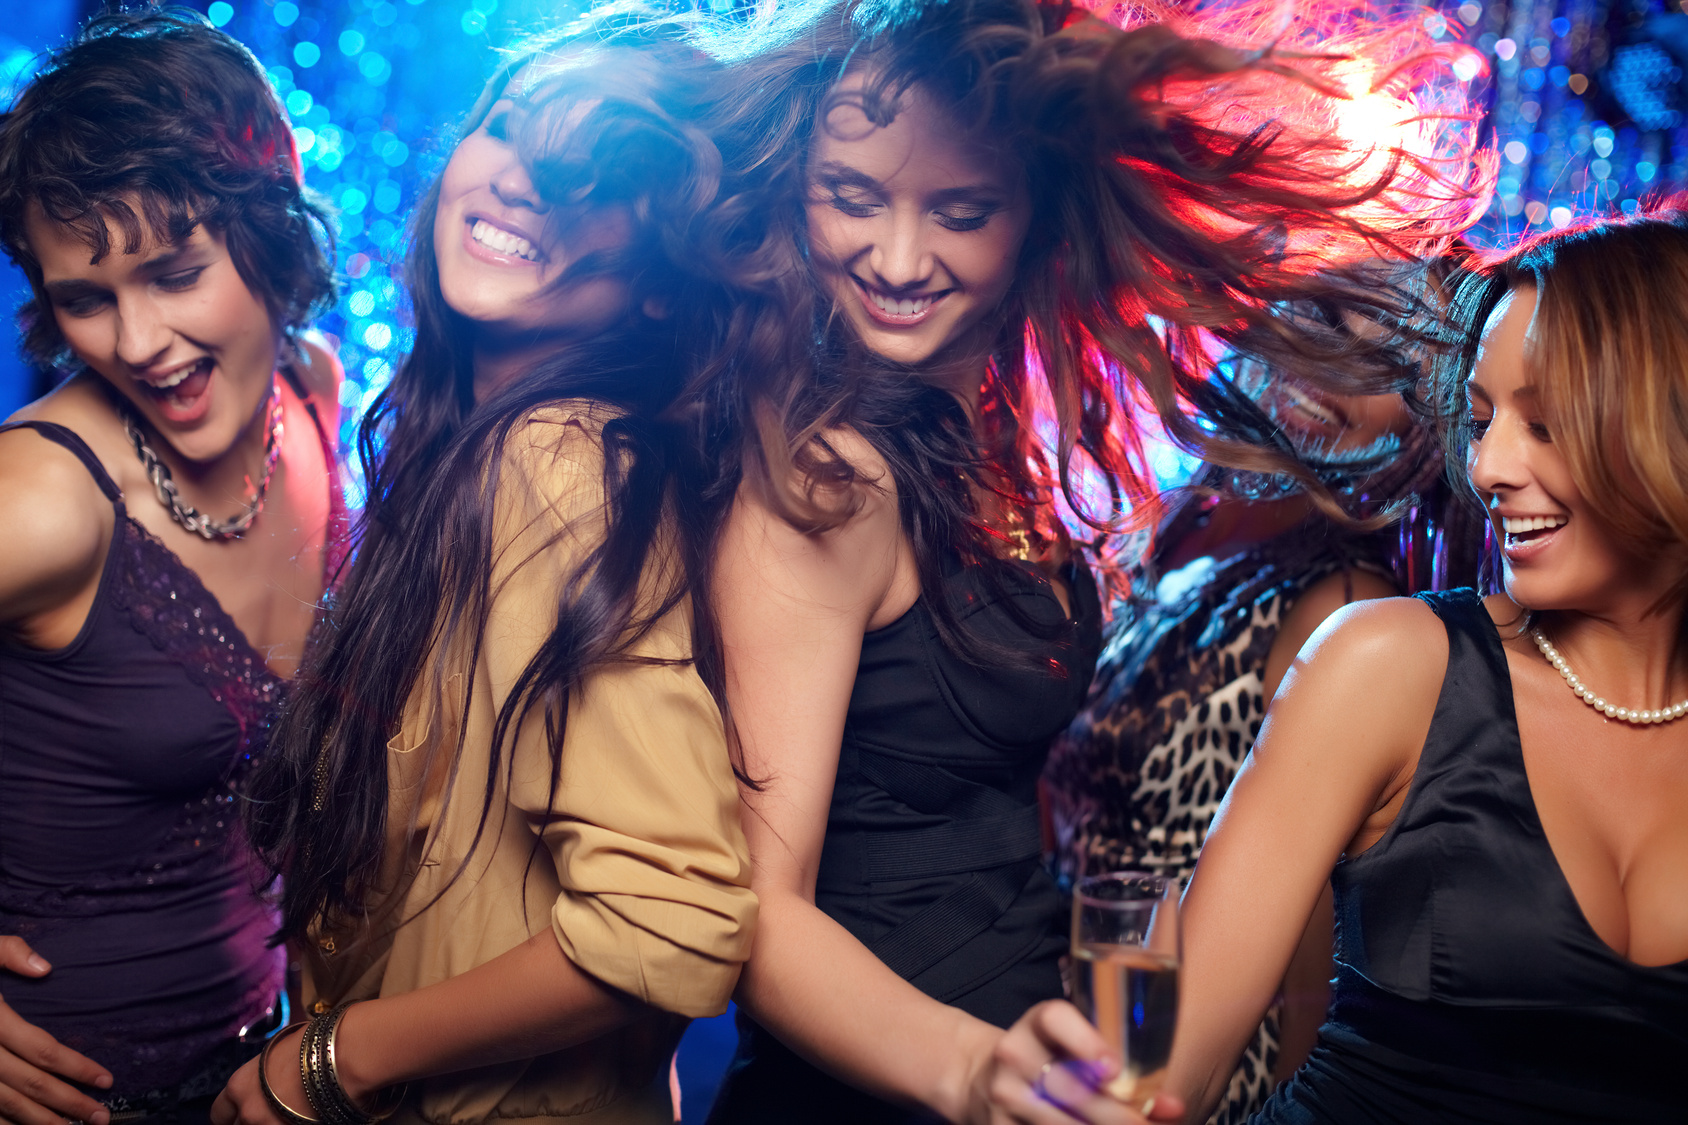 Young women having fun dancing at nightclub.